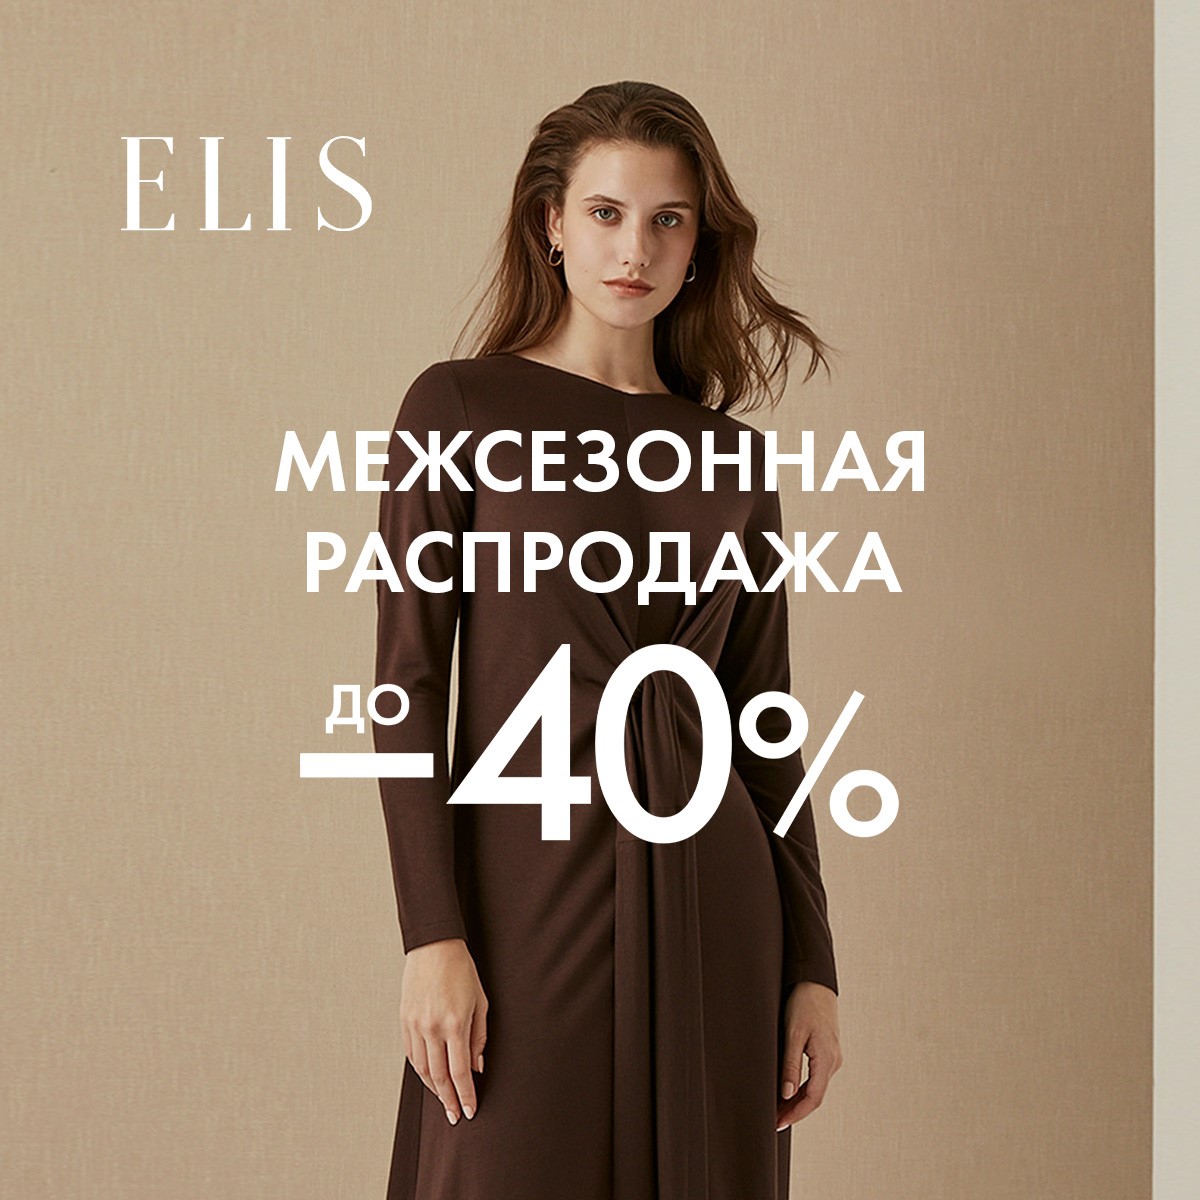 Скидки до 40% в магазинах ELIS